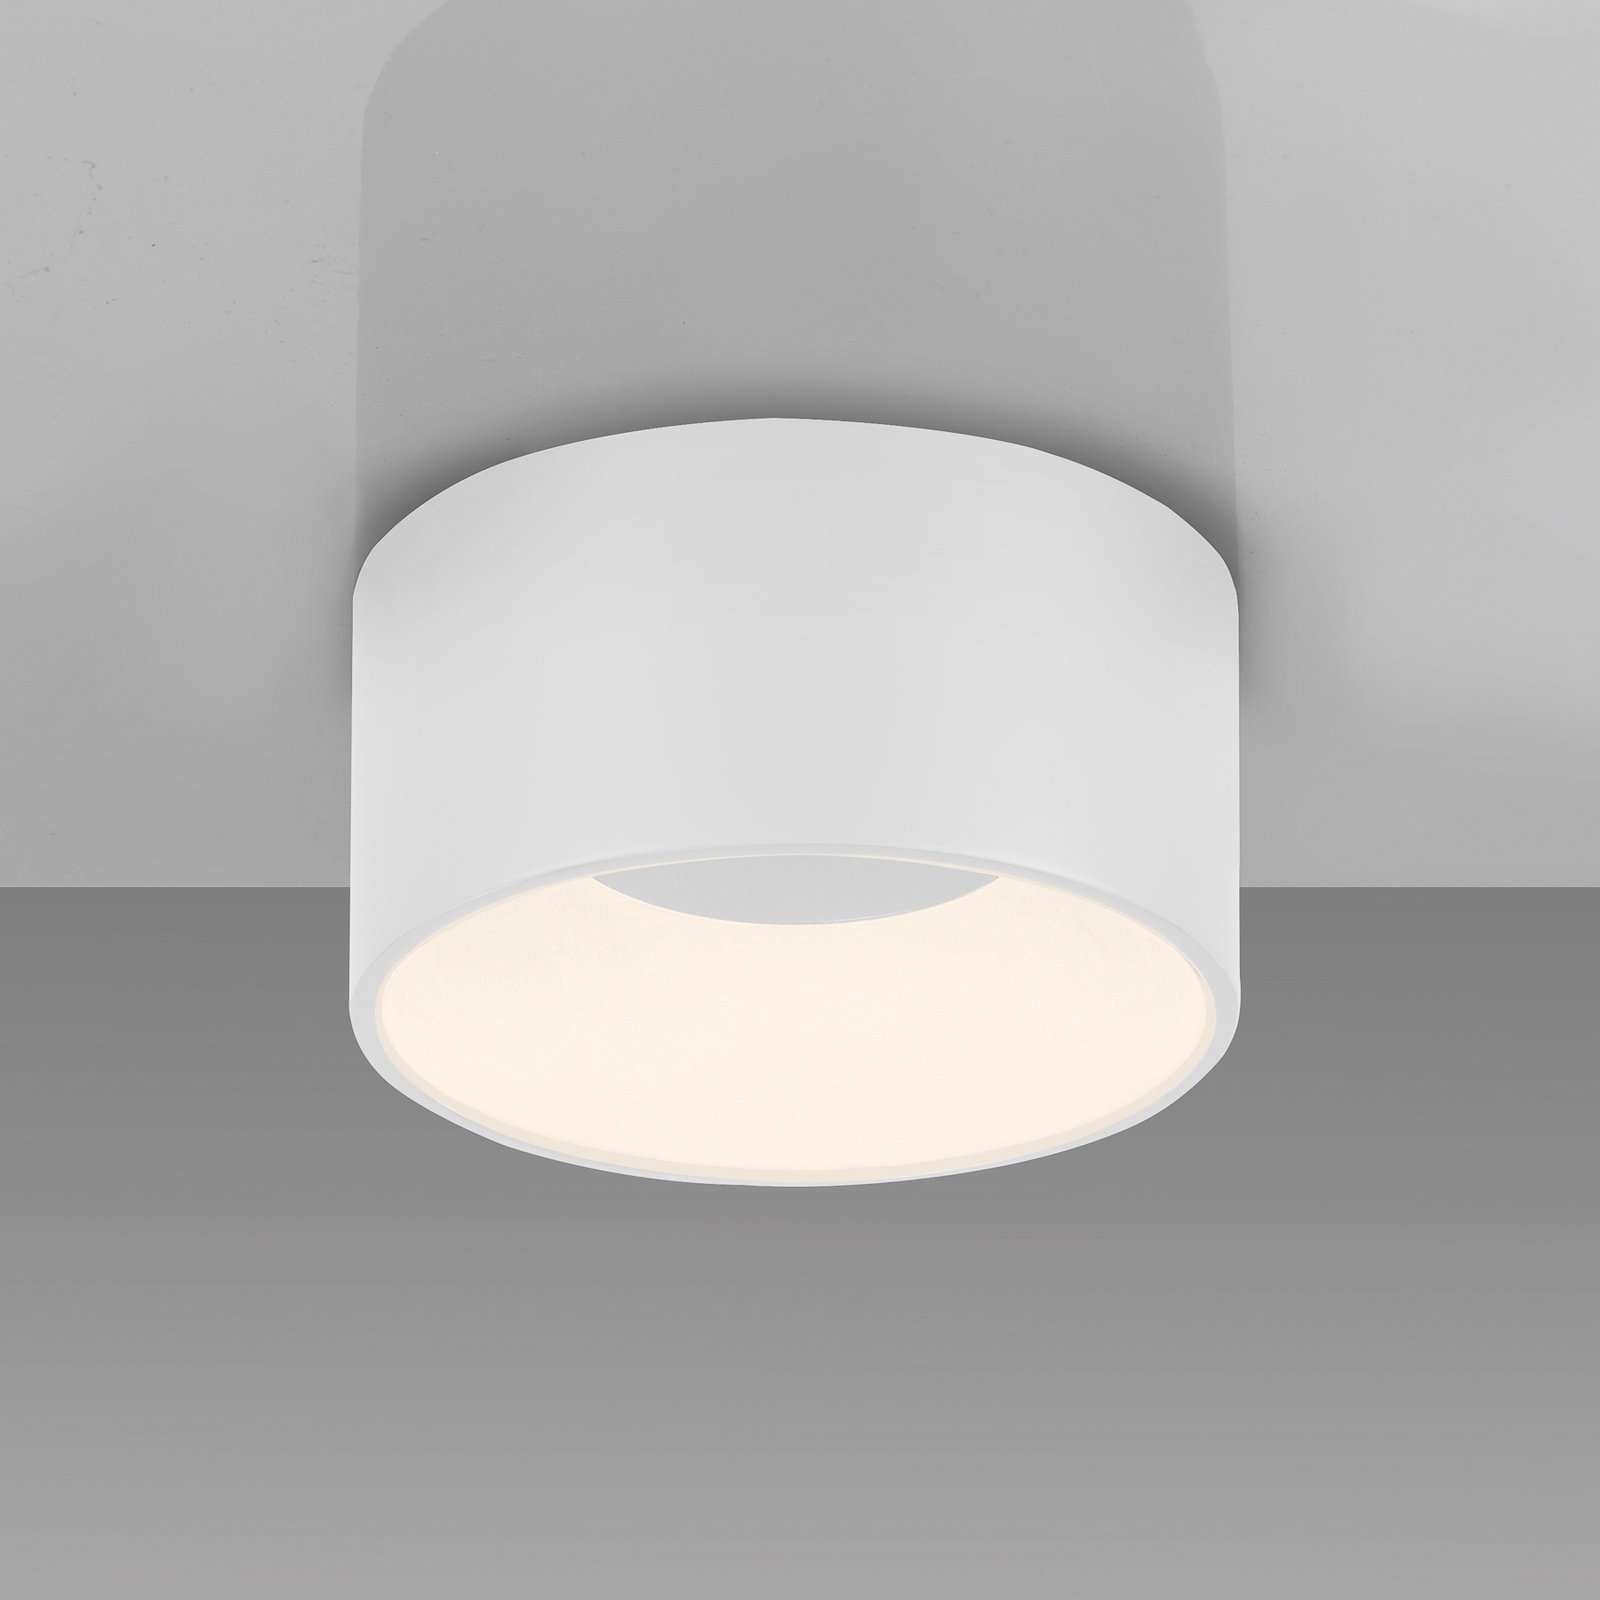 JUST LIGHT. Tanika LED-loftslampe, hvid, Ø 16 cm, dæmpbar